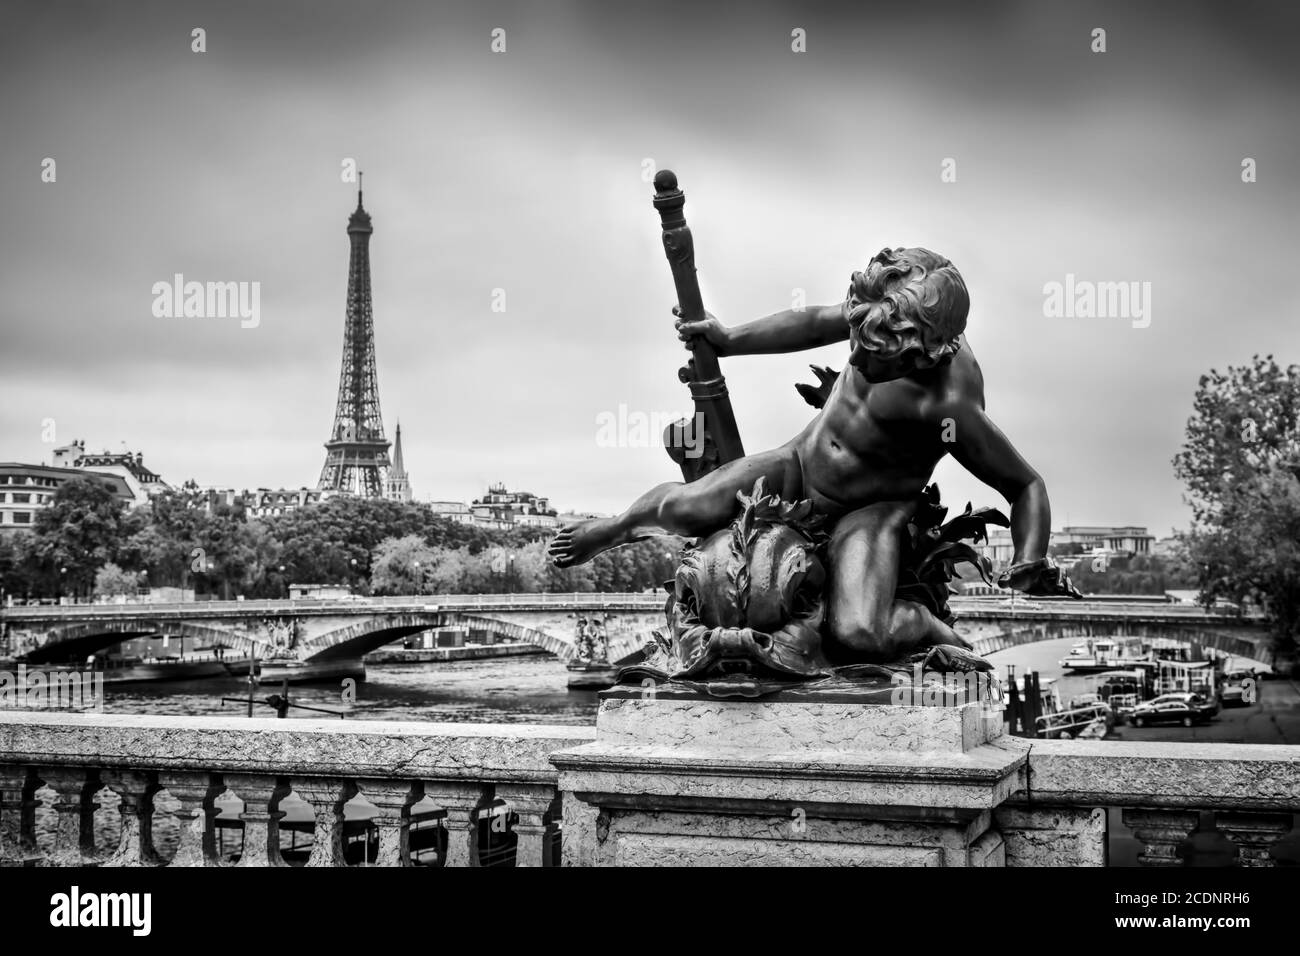 Statue auf Pont Alexandre III Brücke in Paris, Frankreich. Seine und Eiffelturm. Stockfoto